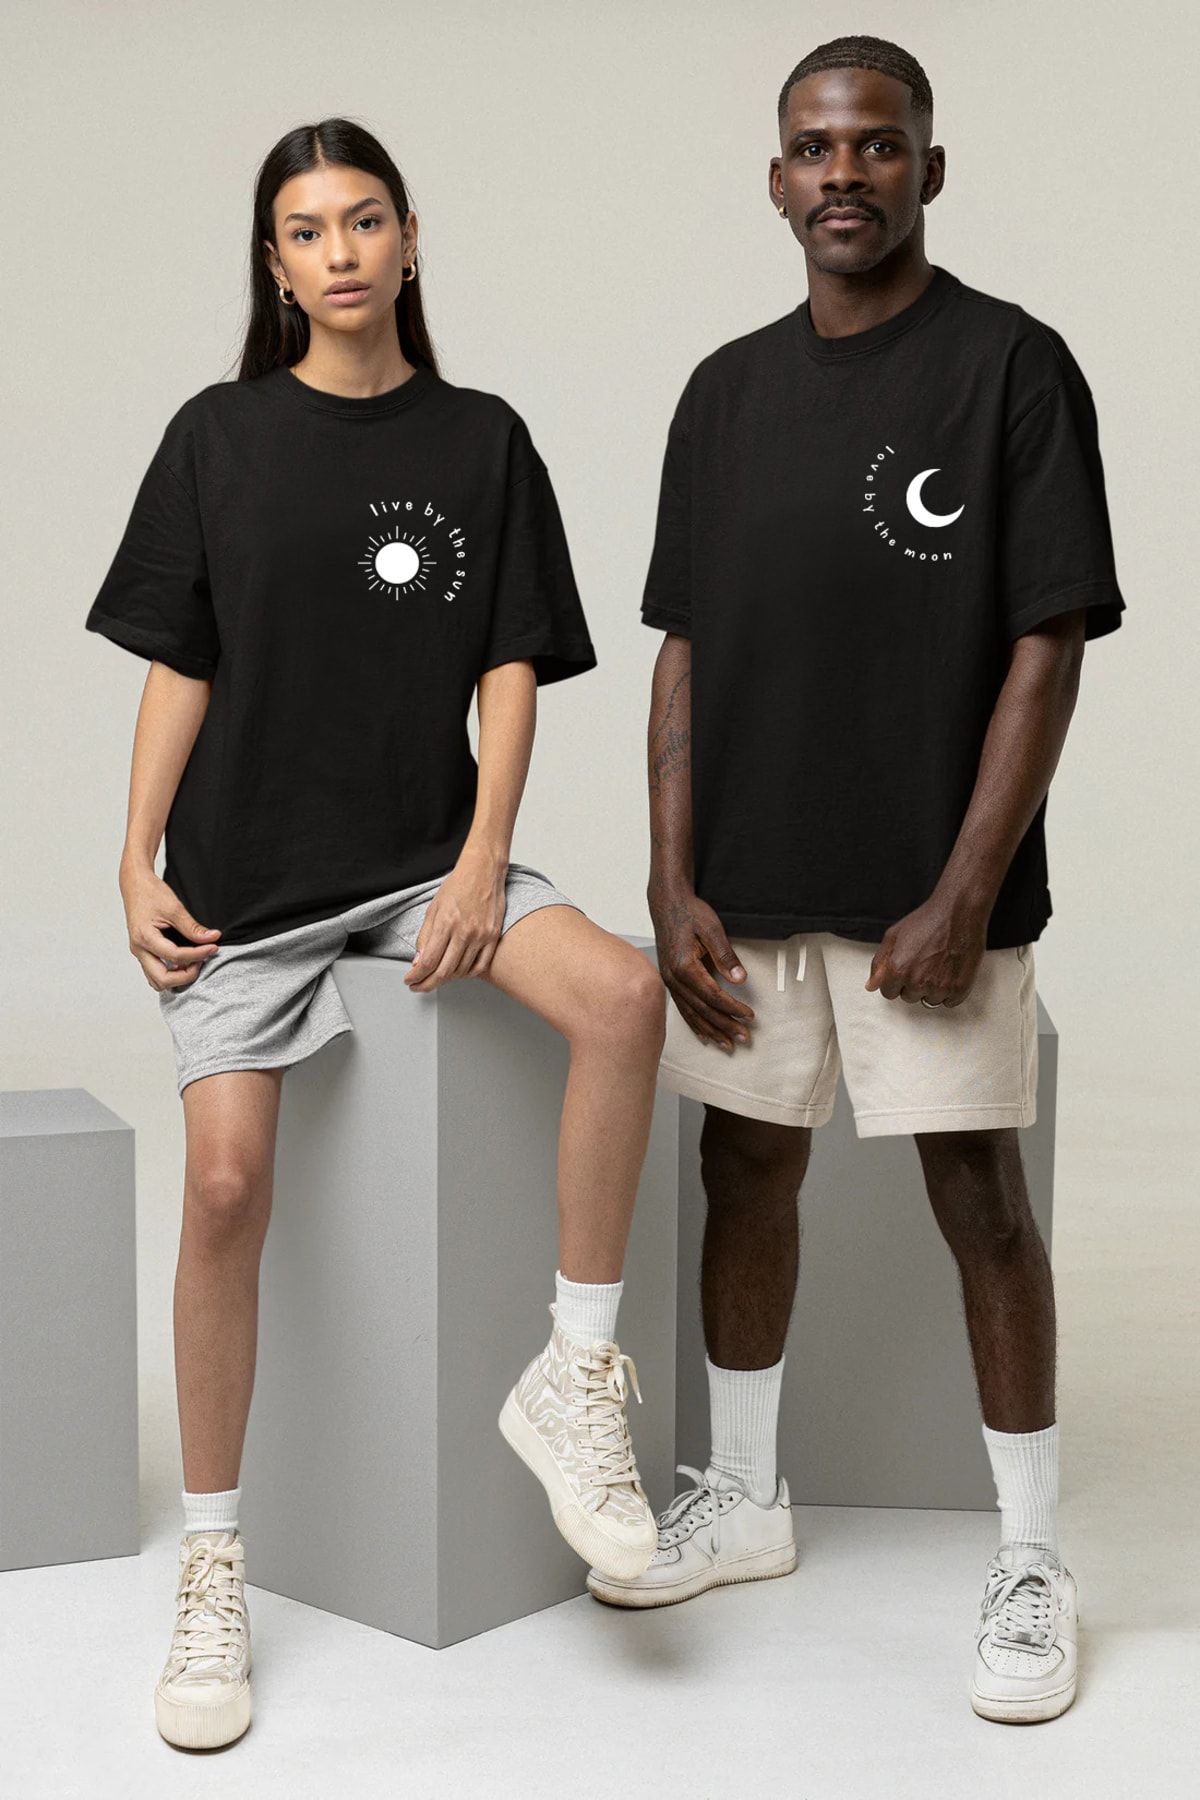 Pear Wear Moon Sun Baskılı Tişört Sevgili Çift Takım Ay Güneş Siyah Beyaz Oversize Couple T-shirt